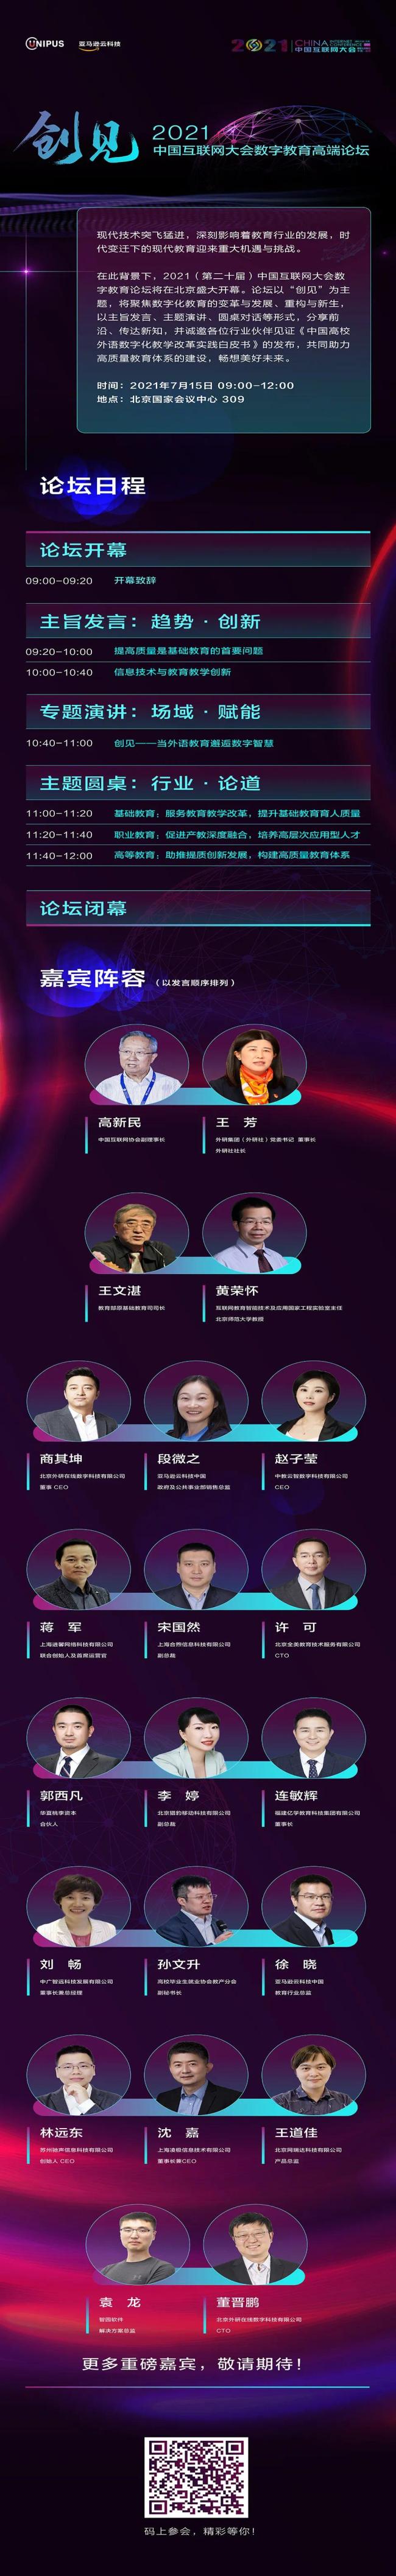 2021中国互联网大会 | 数字教育高端论坛即将启幕